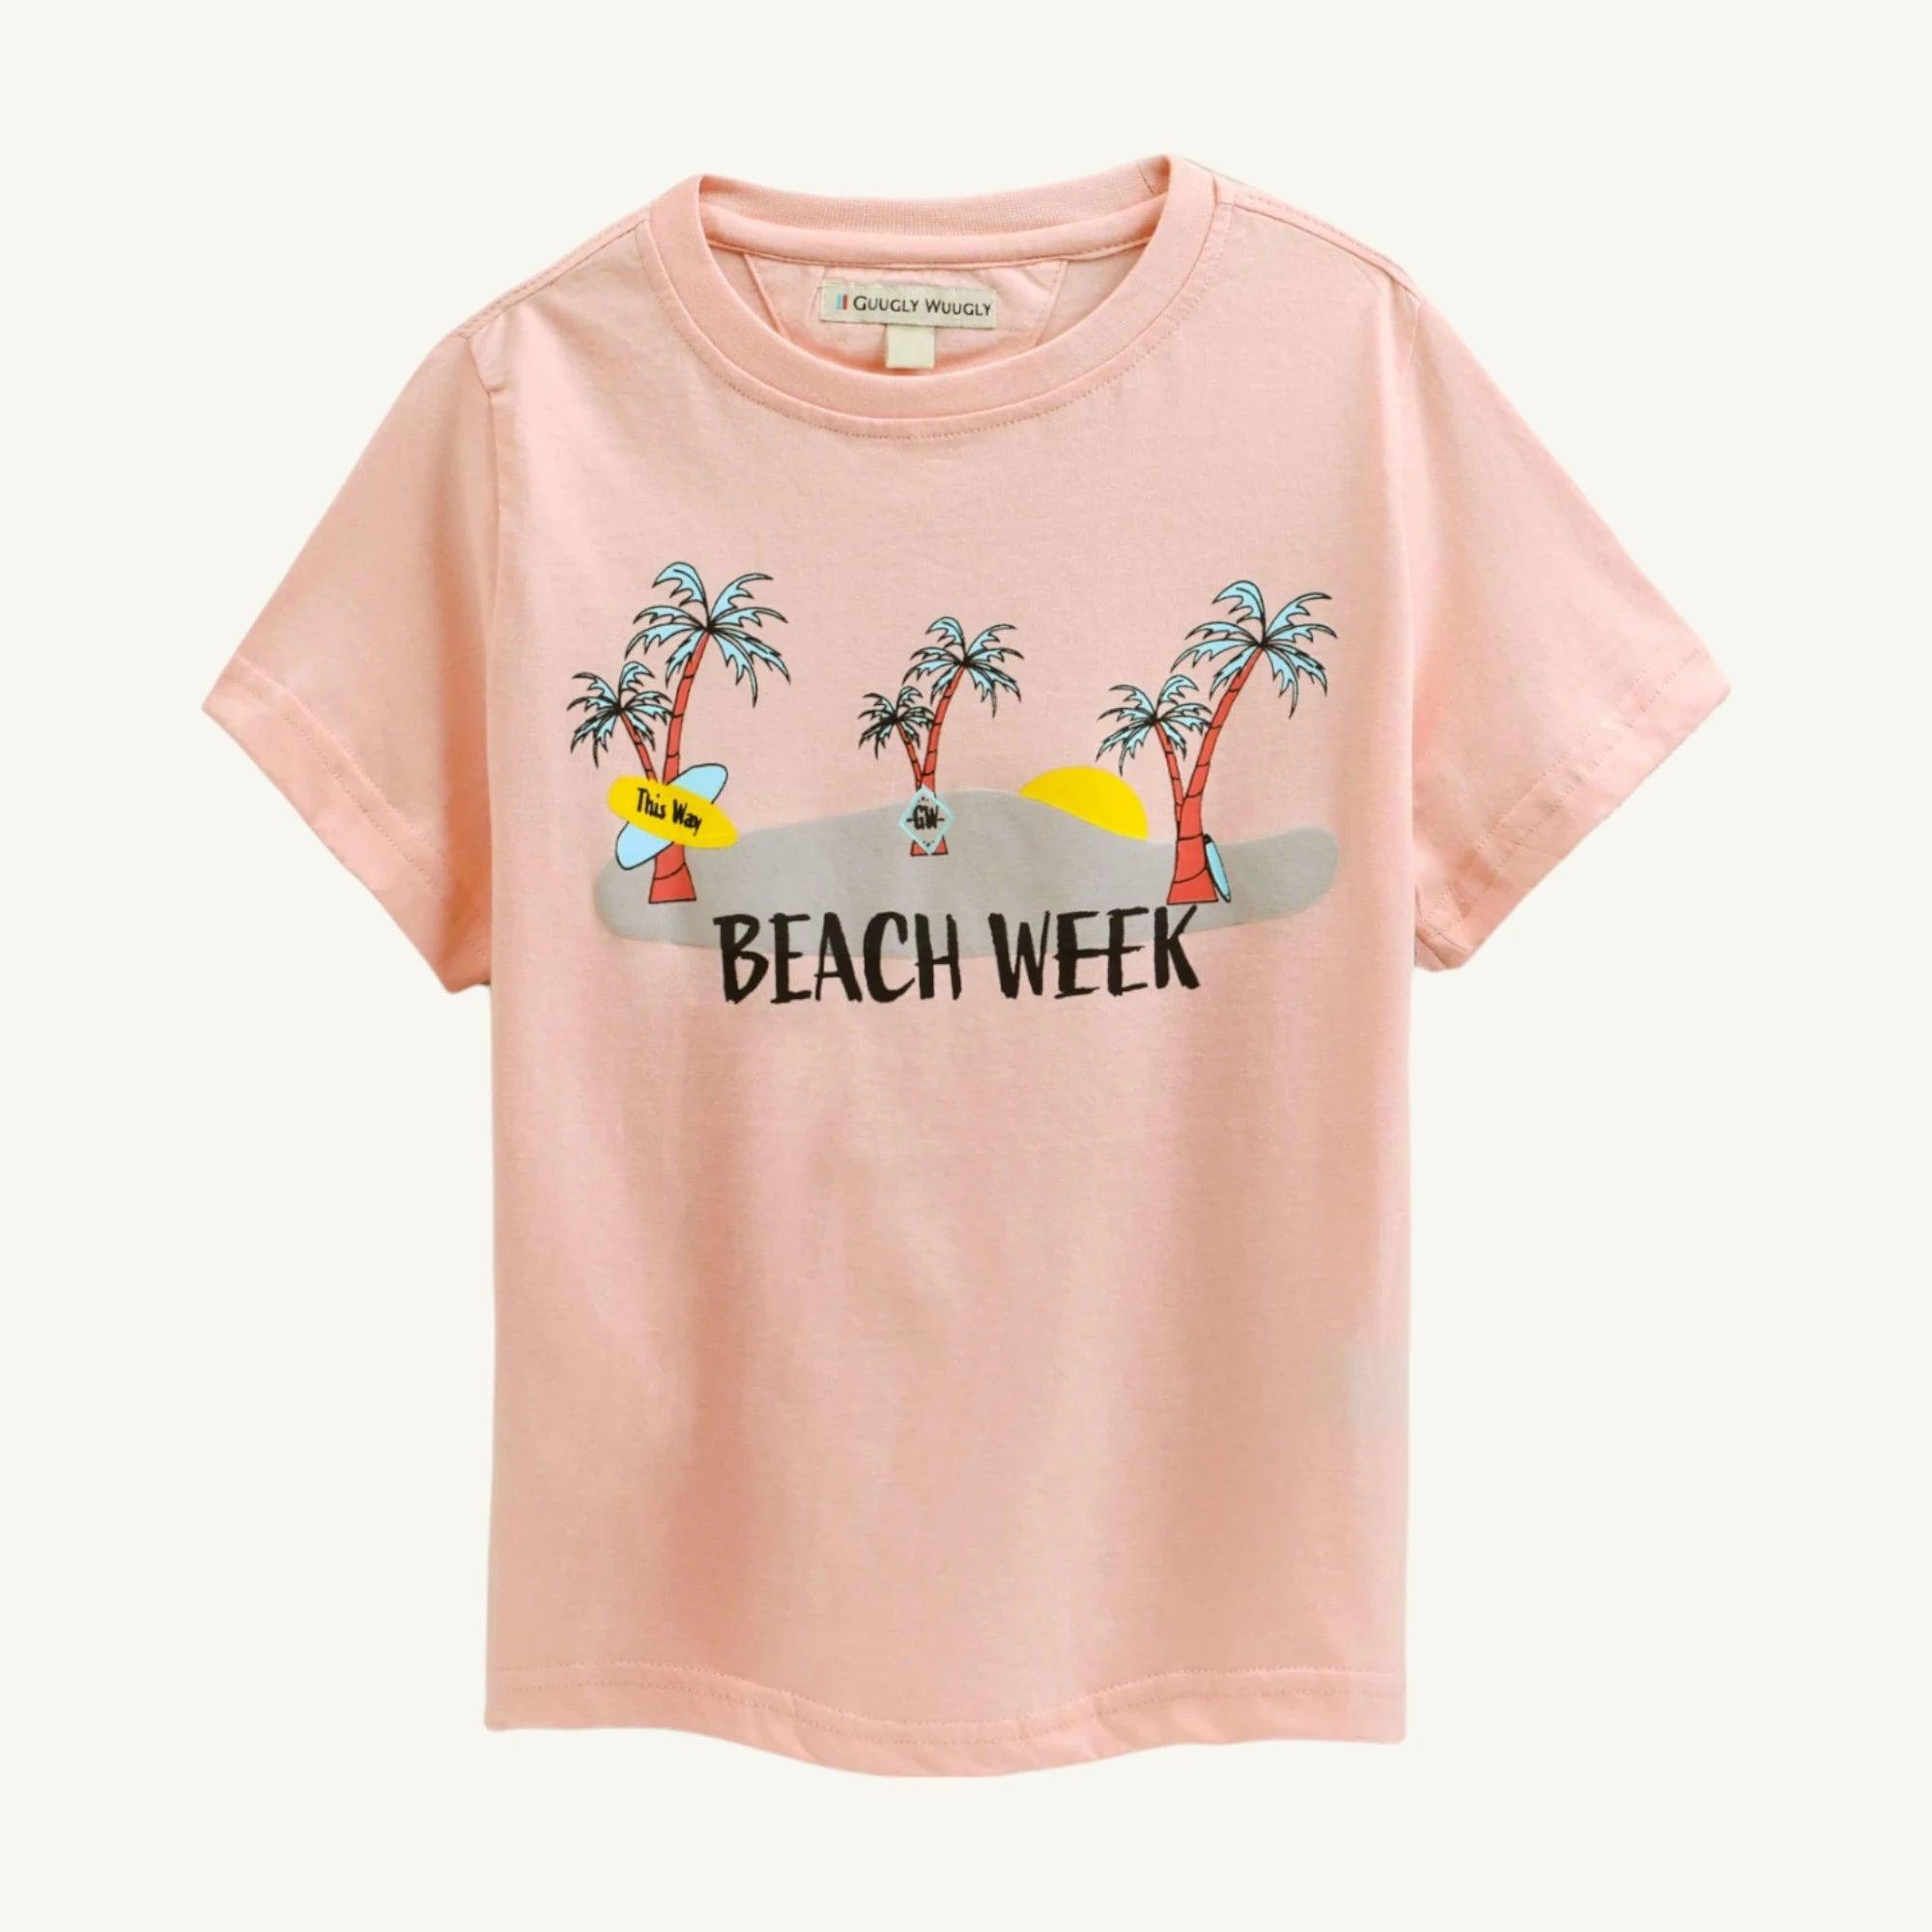 Boys Beach Week T-shirt - Guugly Wuugly